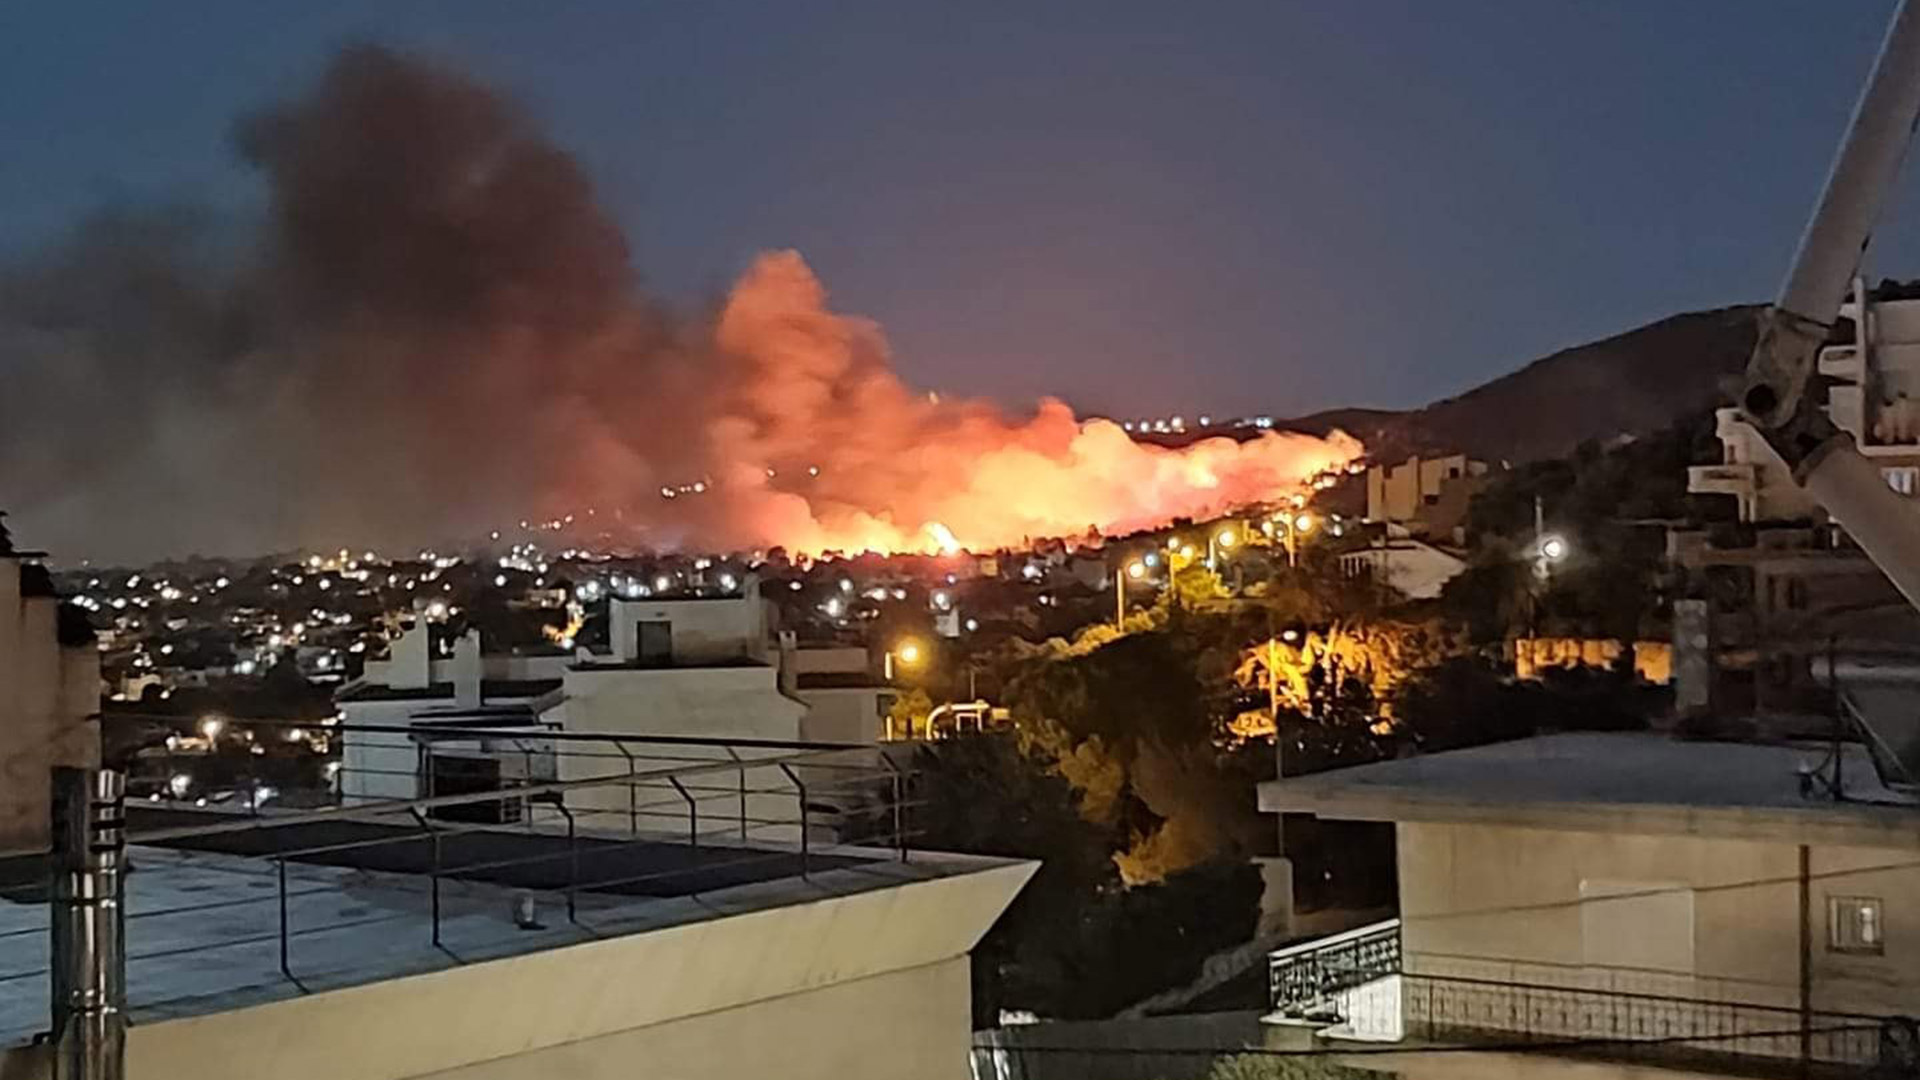 El fuego se declaró a las 22H35 locales cerca de viviendas en Nea Makri y se han recomendado evacuaciones por precaución